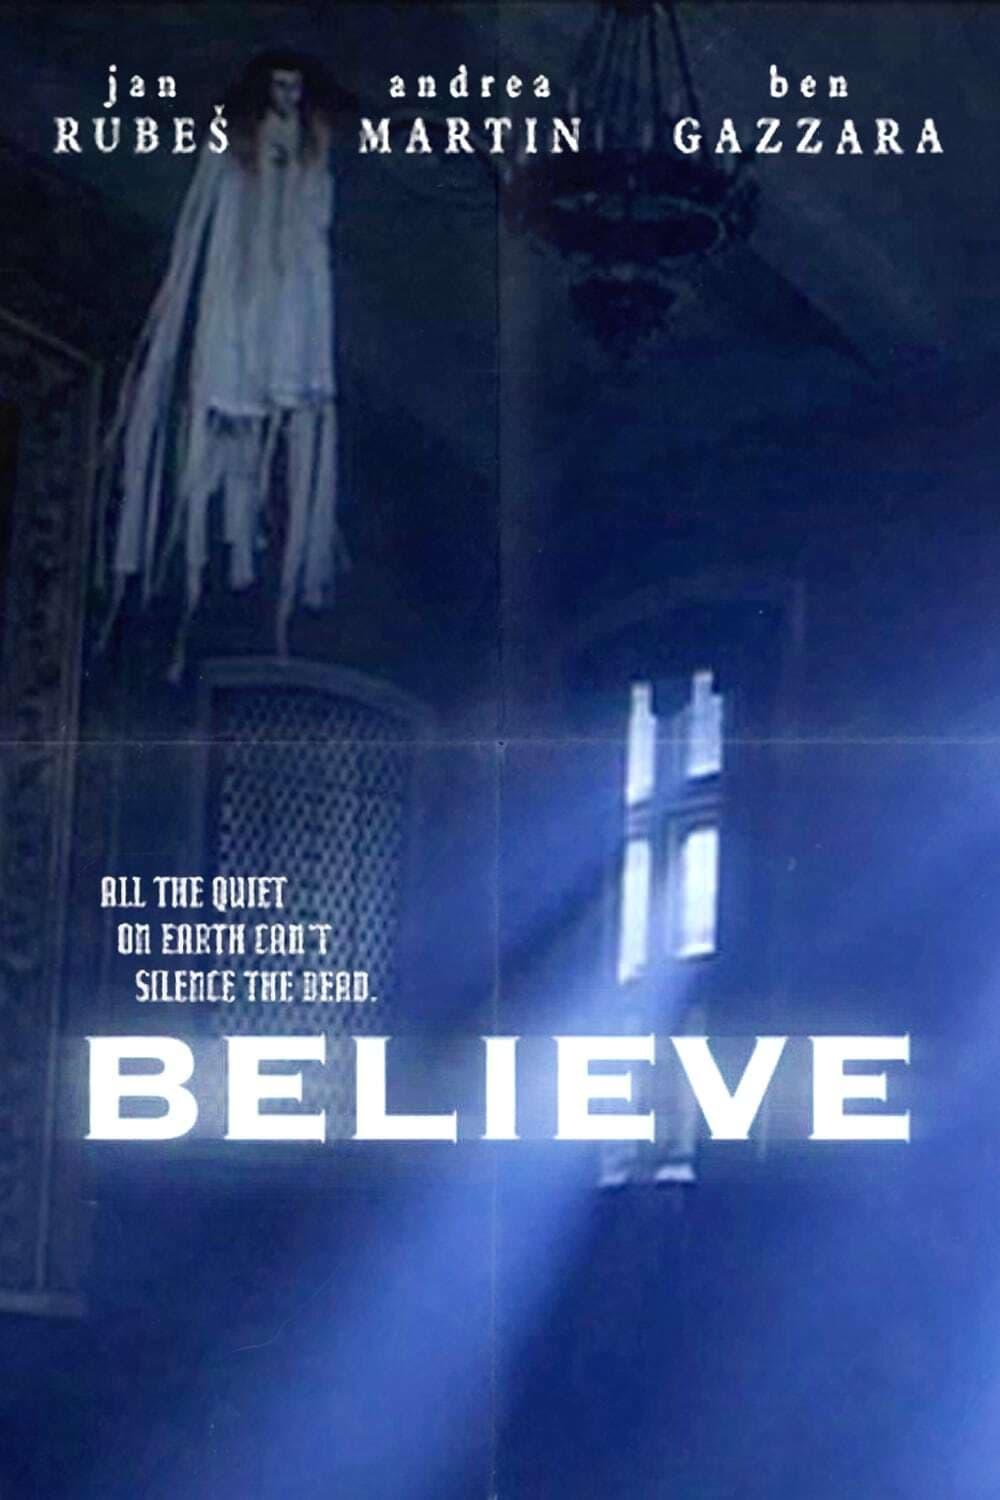 Believe poster